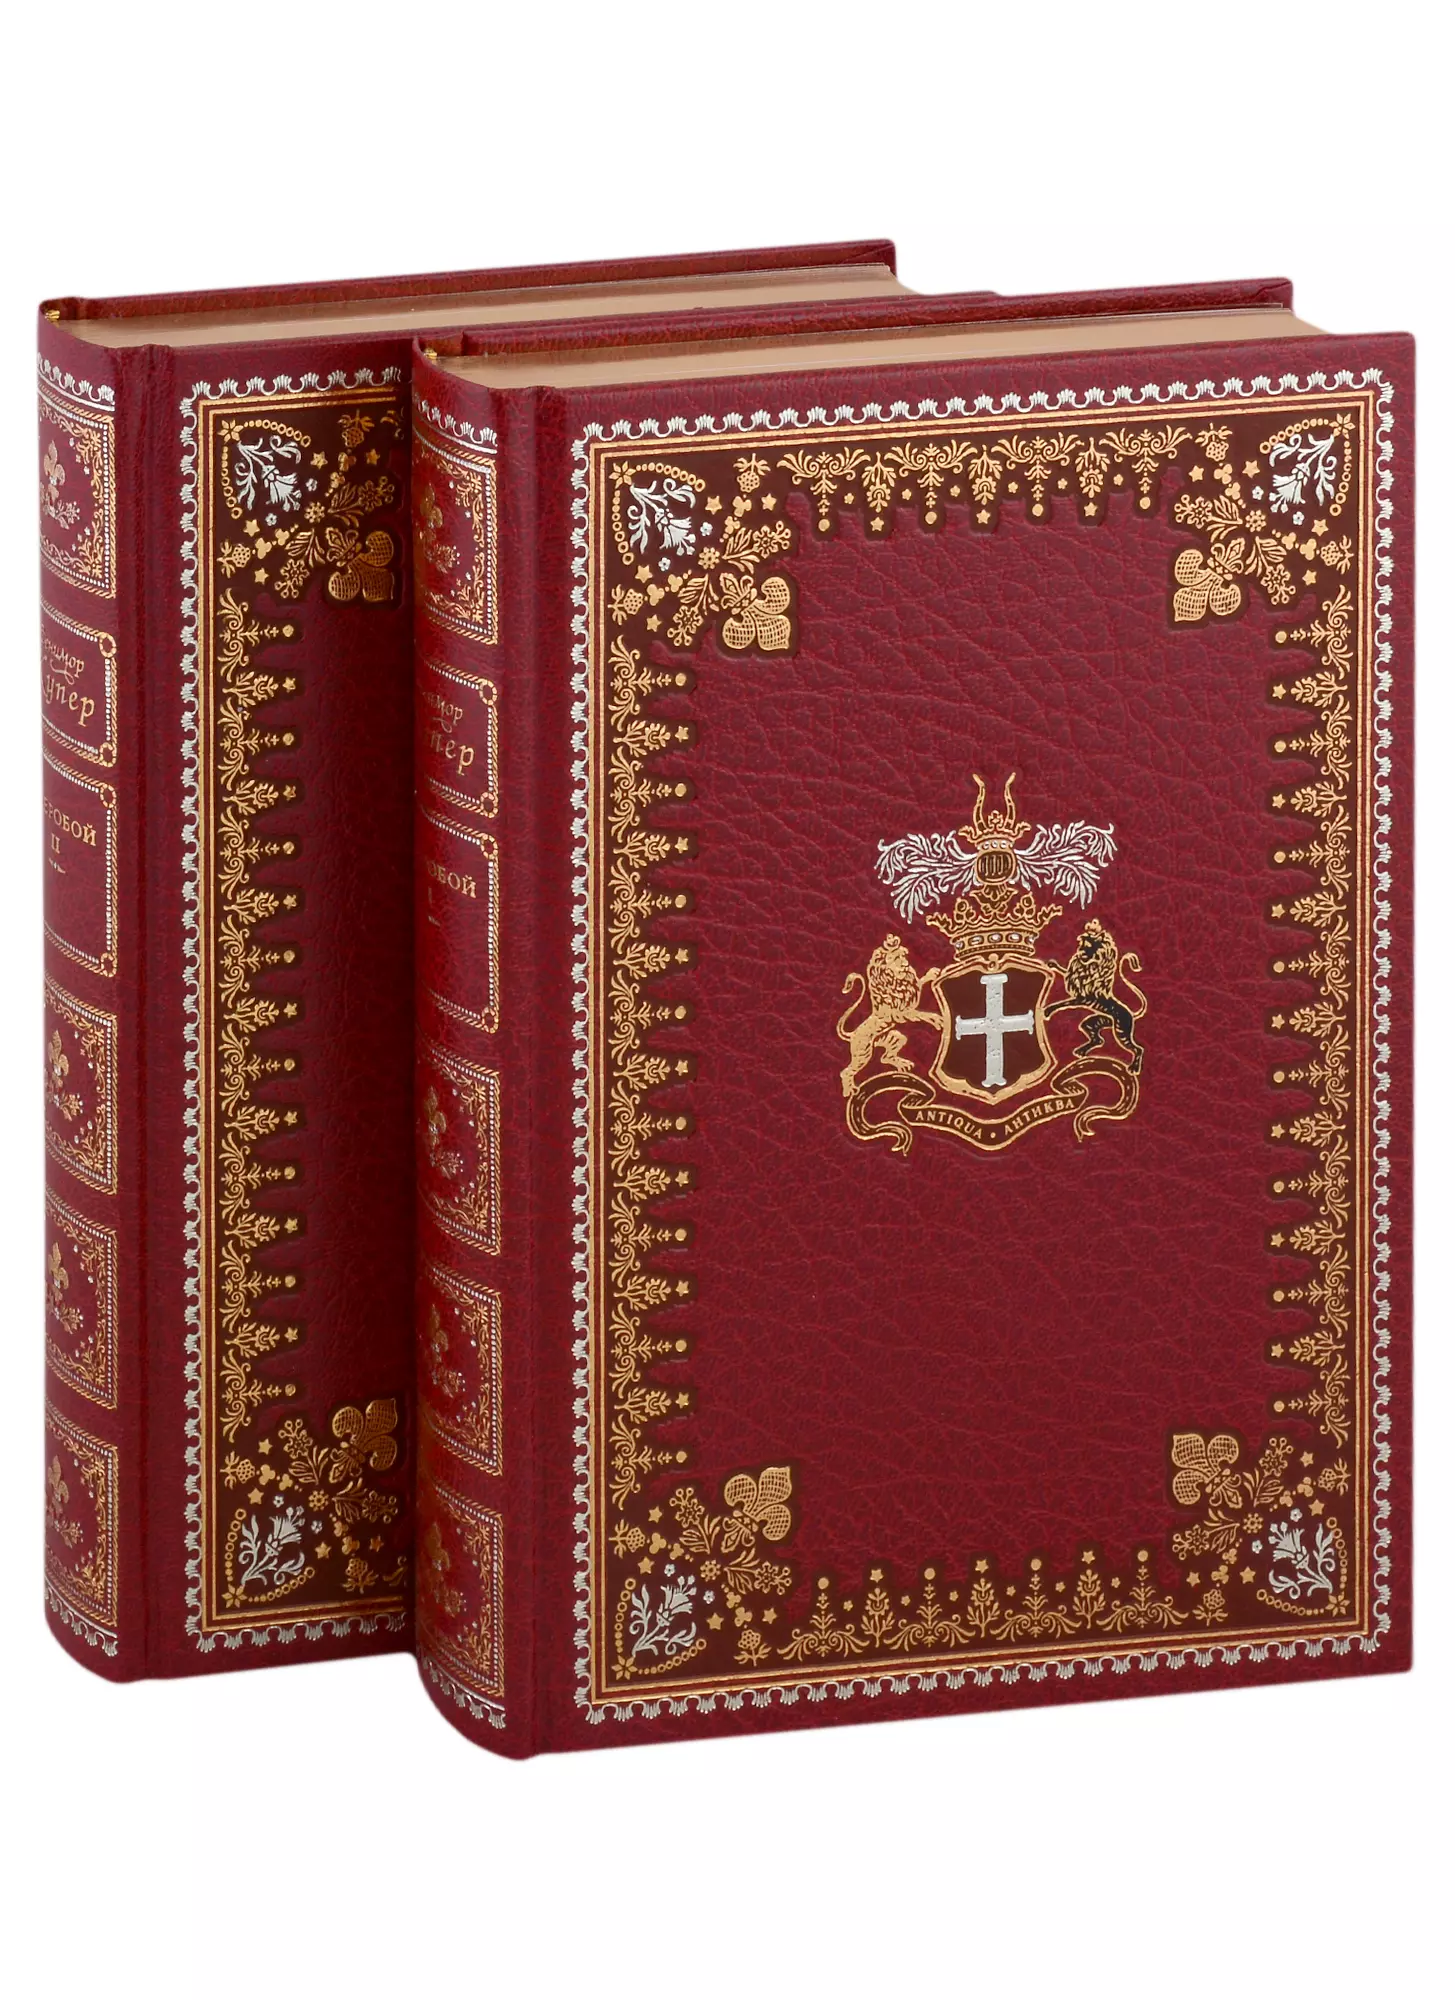 Купер Джеймс Фенимор - Зверобой: В 2 томах (комплект из 2 книг)